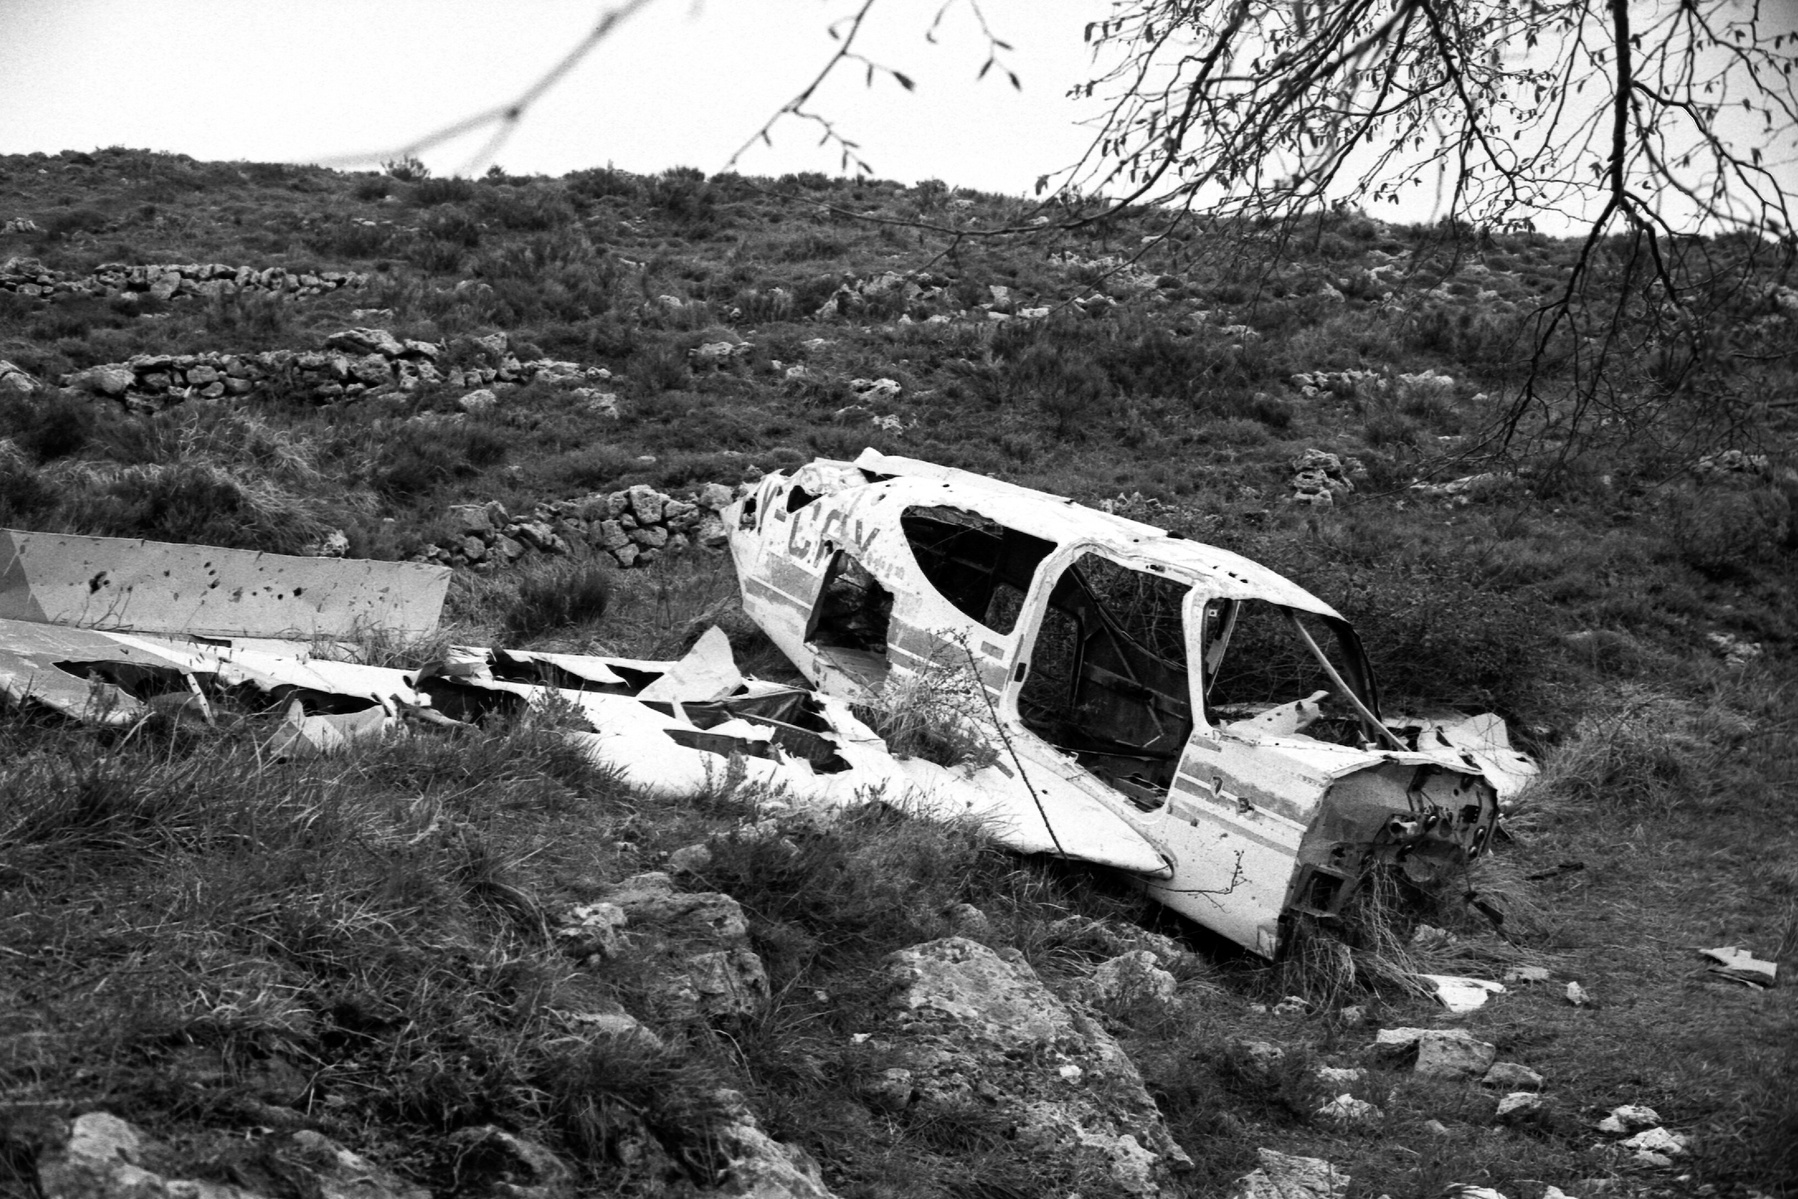 Crashed plane shot by Grégoire Huret with 35mm Leica M6 & Ilford HP5.
Location : Tourrettes-sur-Loup (France)